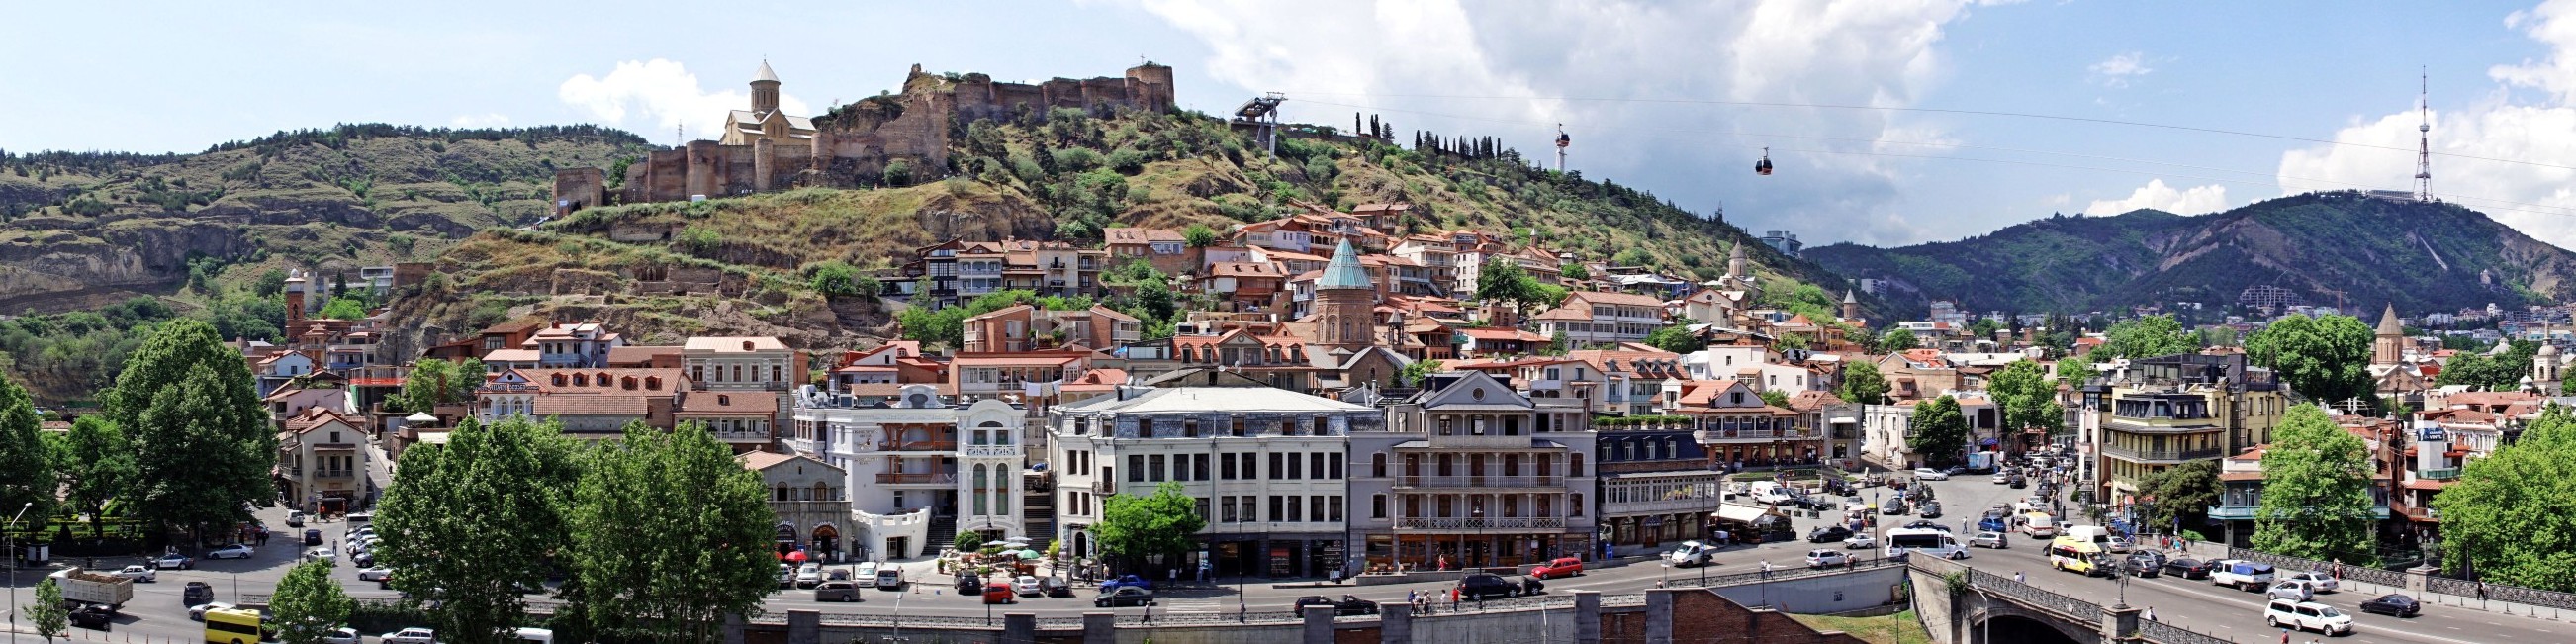 Stare miasto w Tbilisi